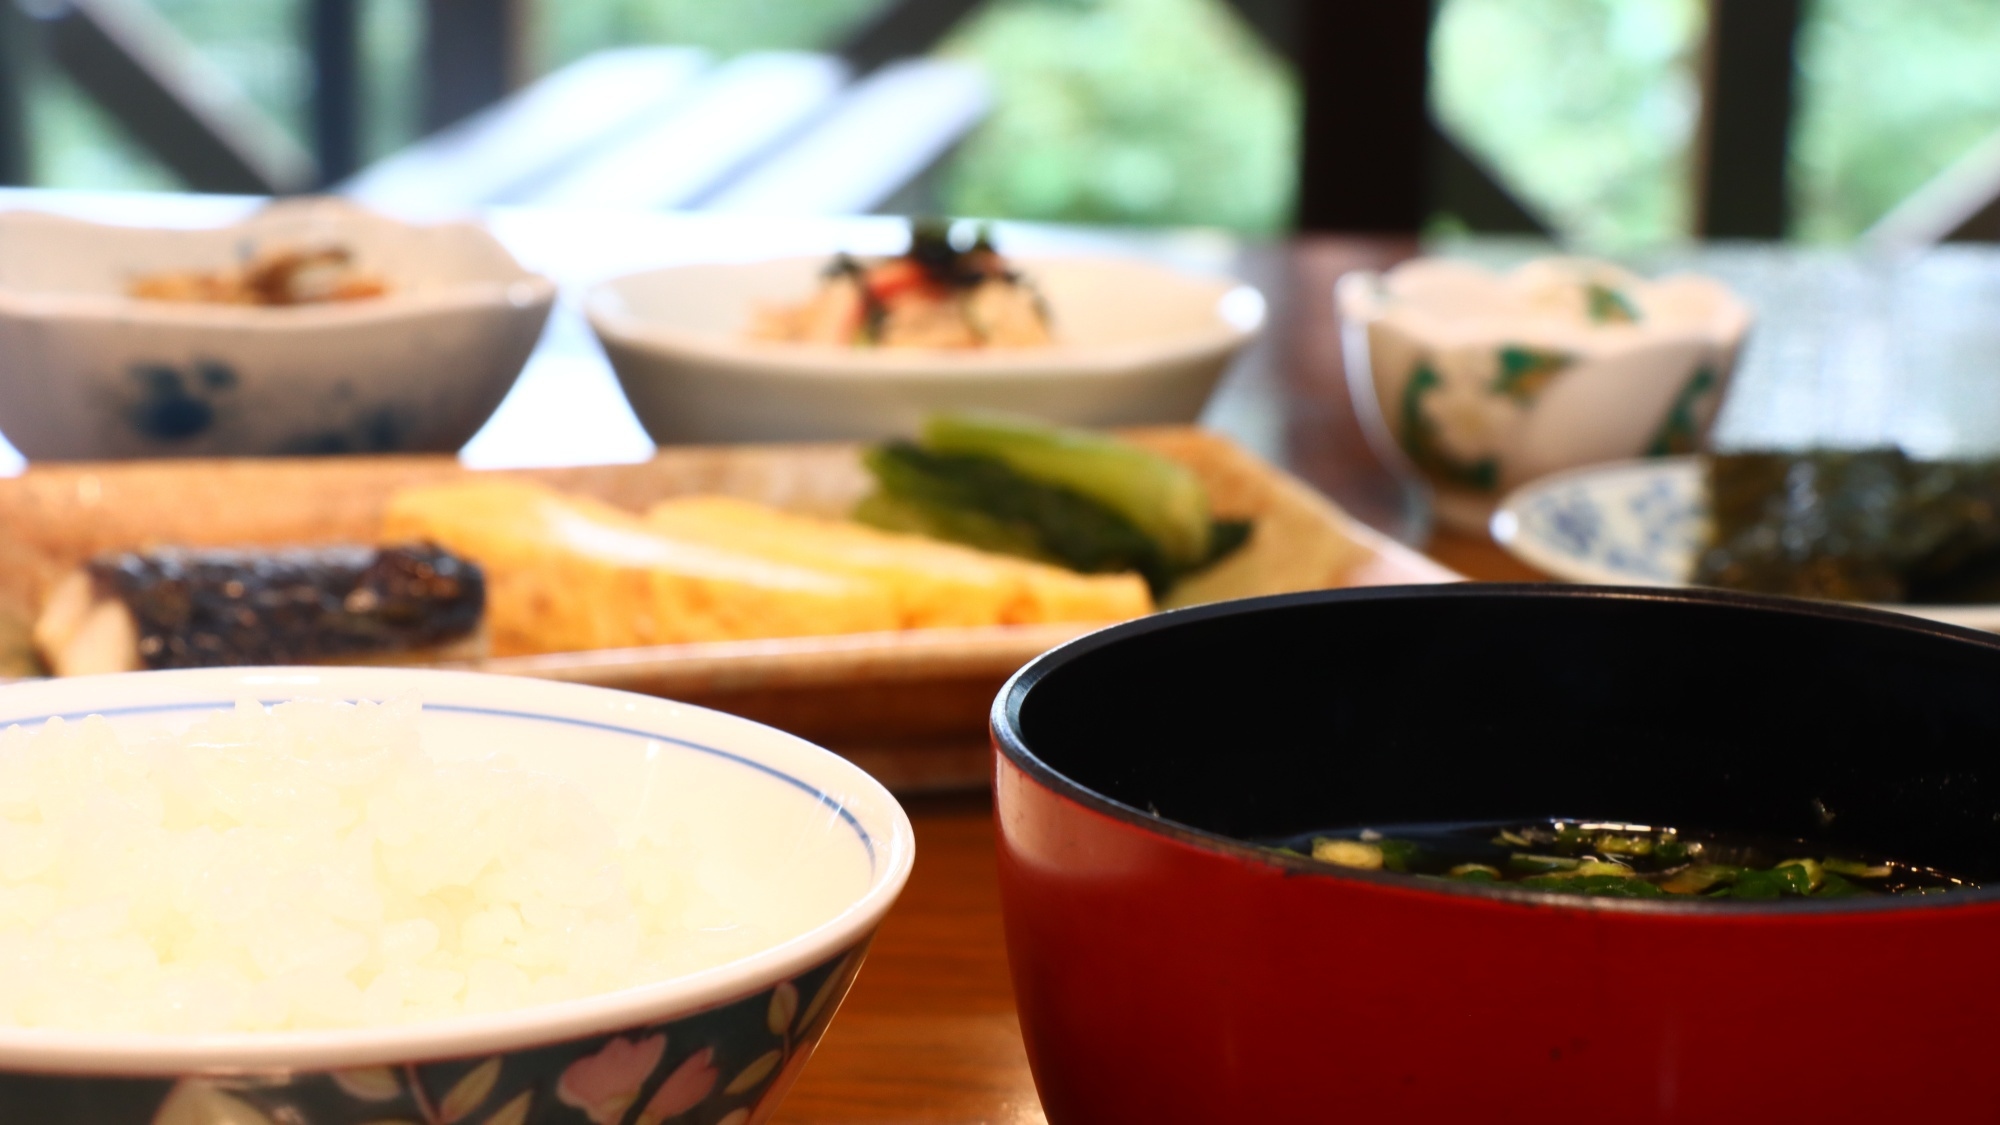 【朝食付】飯山瑞穂のおいしいのコシヒカリ♪秋桜特製の朝食をどうぞ☆